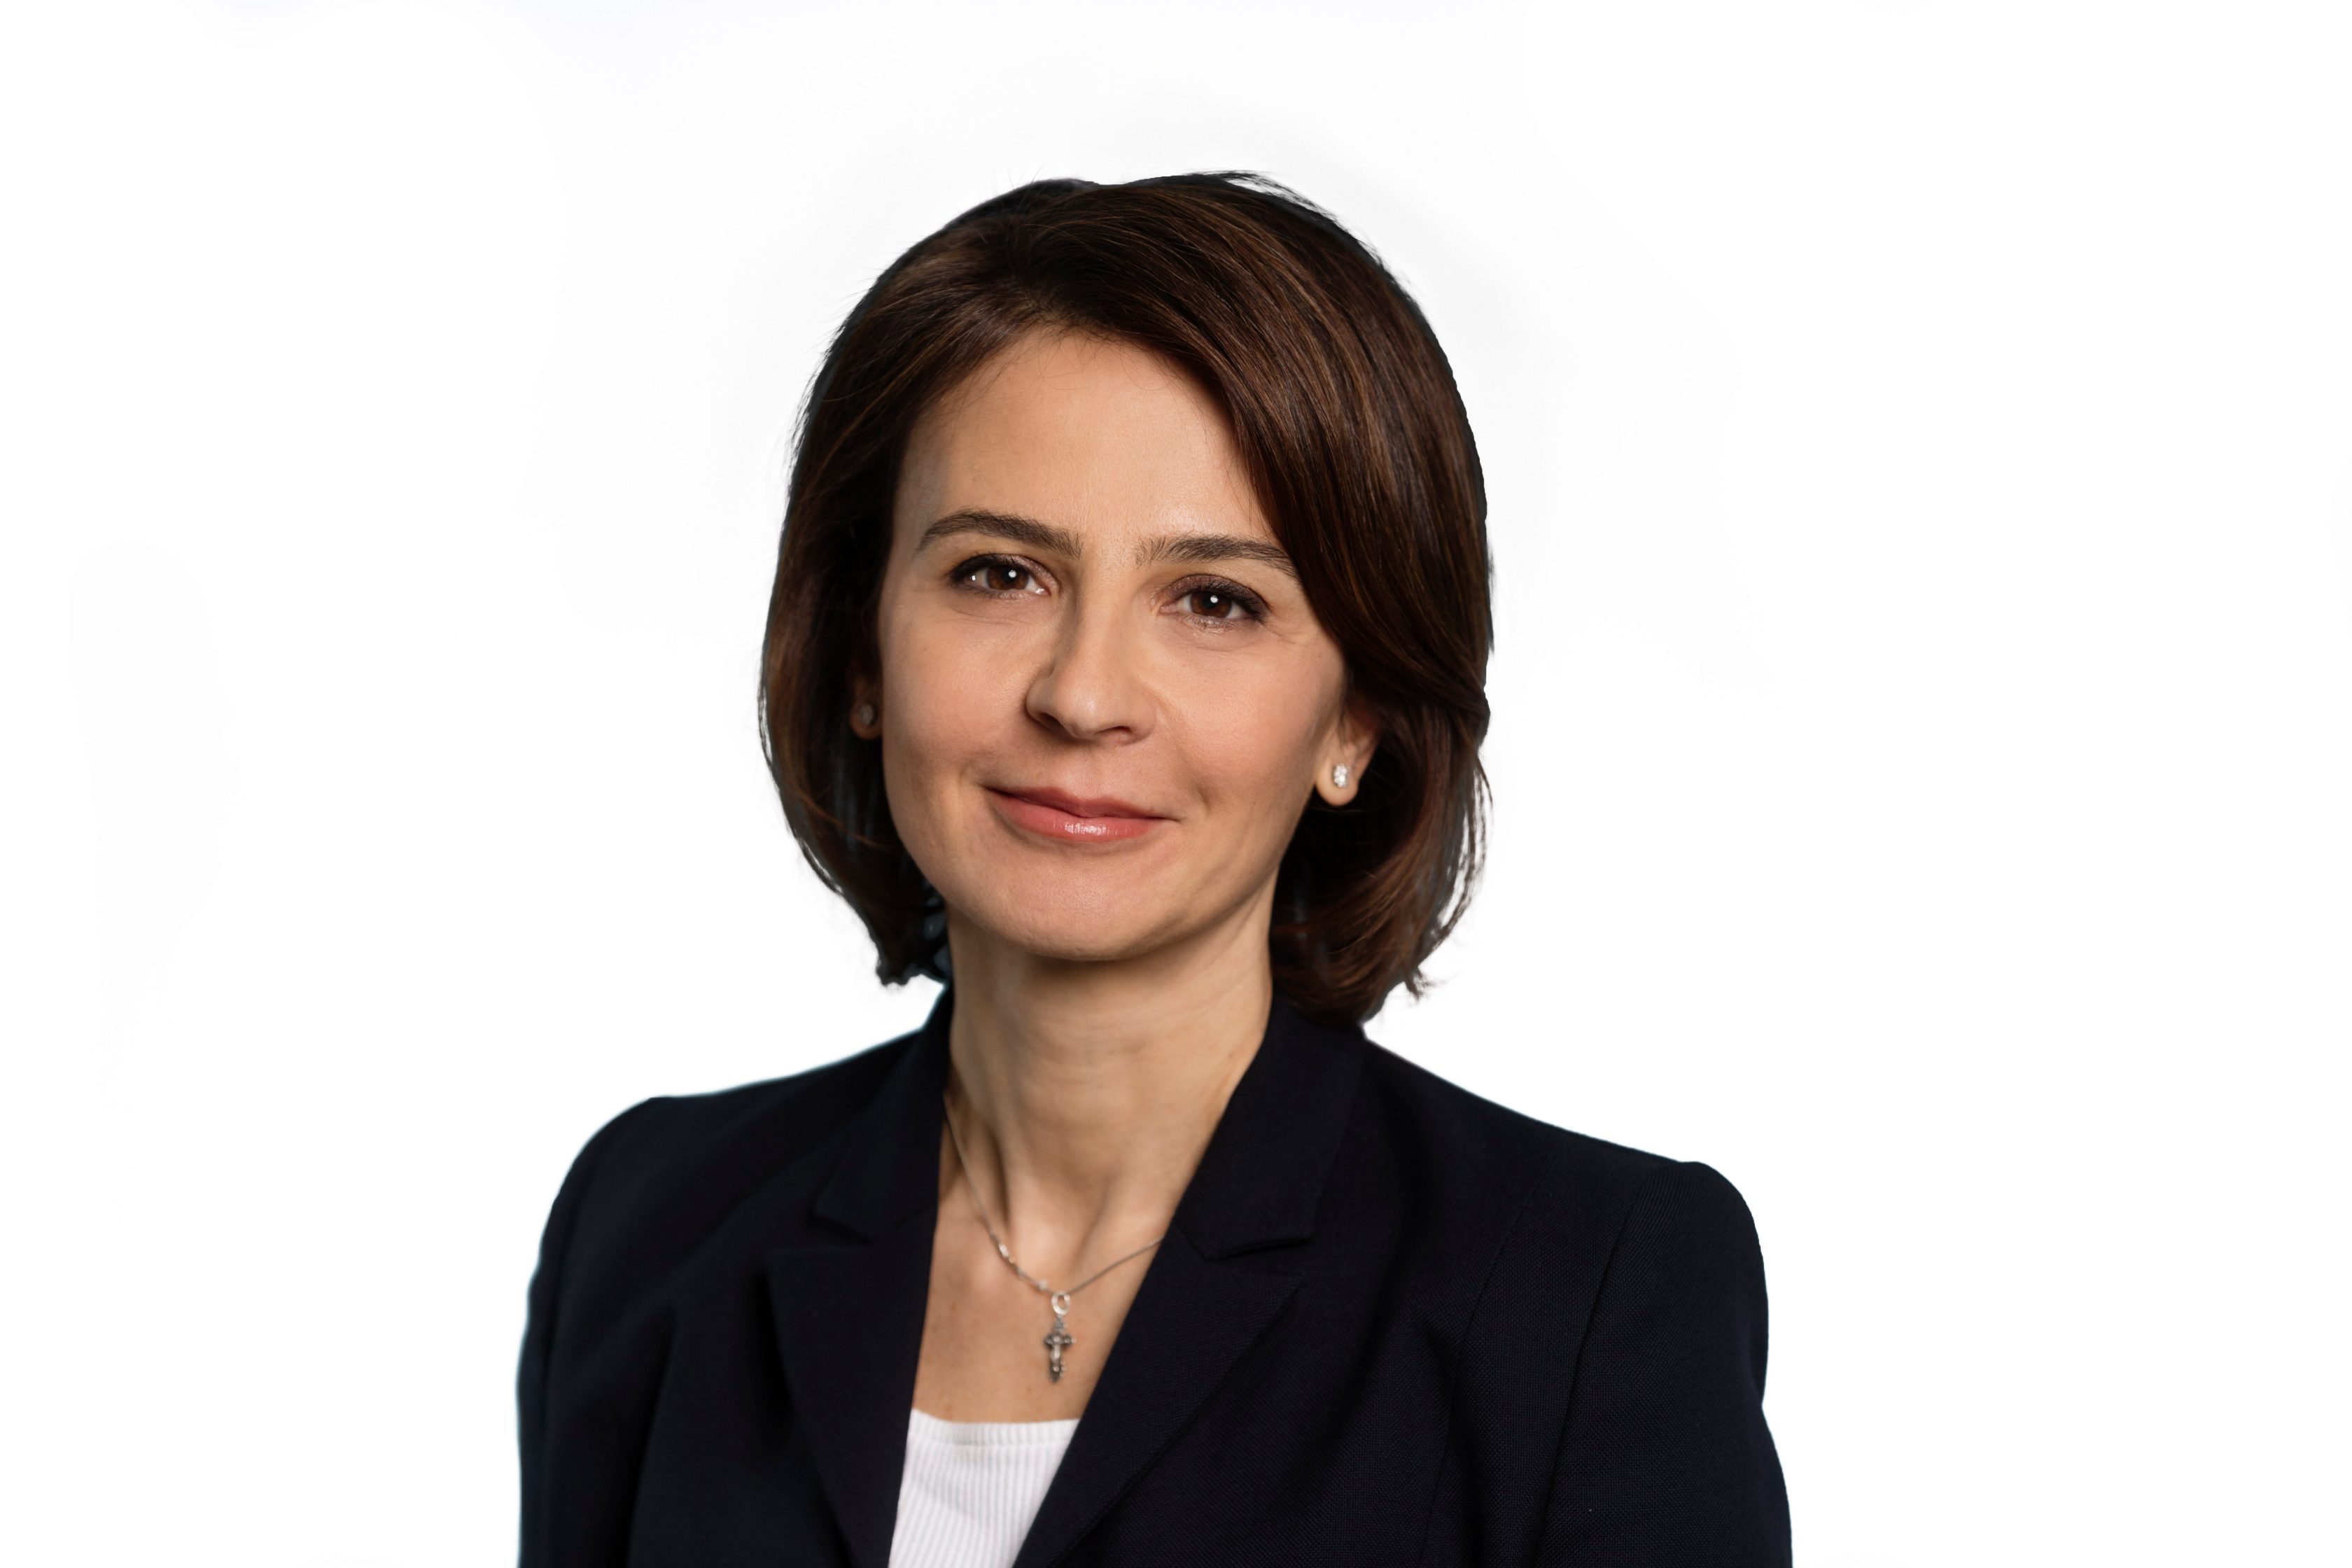 Sirma Boshnakova ist seit Januar 2022 Vorstandsmitglied der Allianz SE.